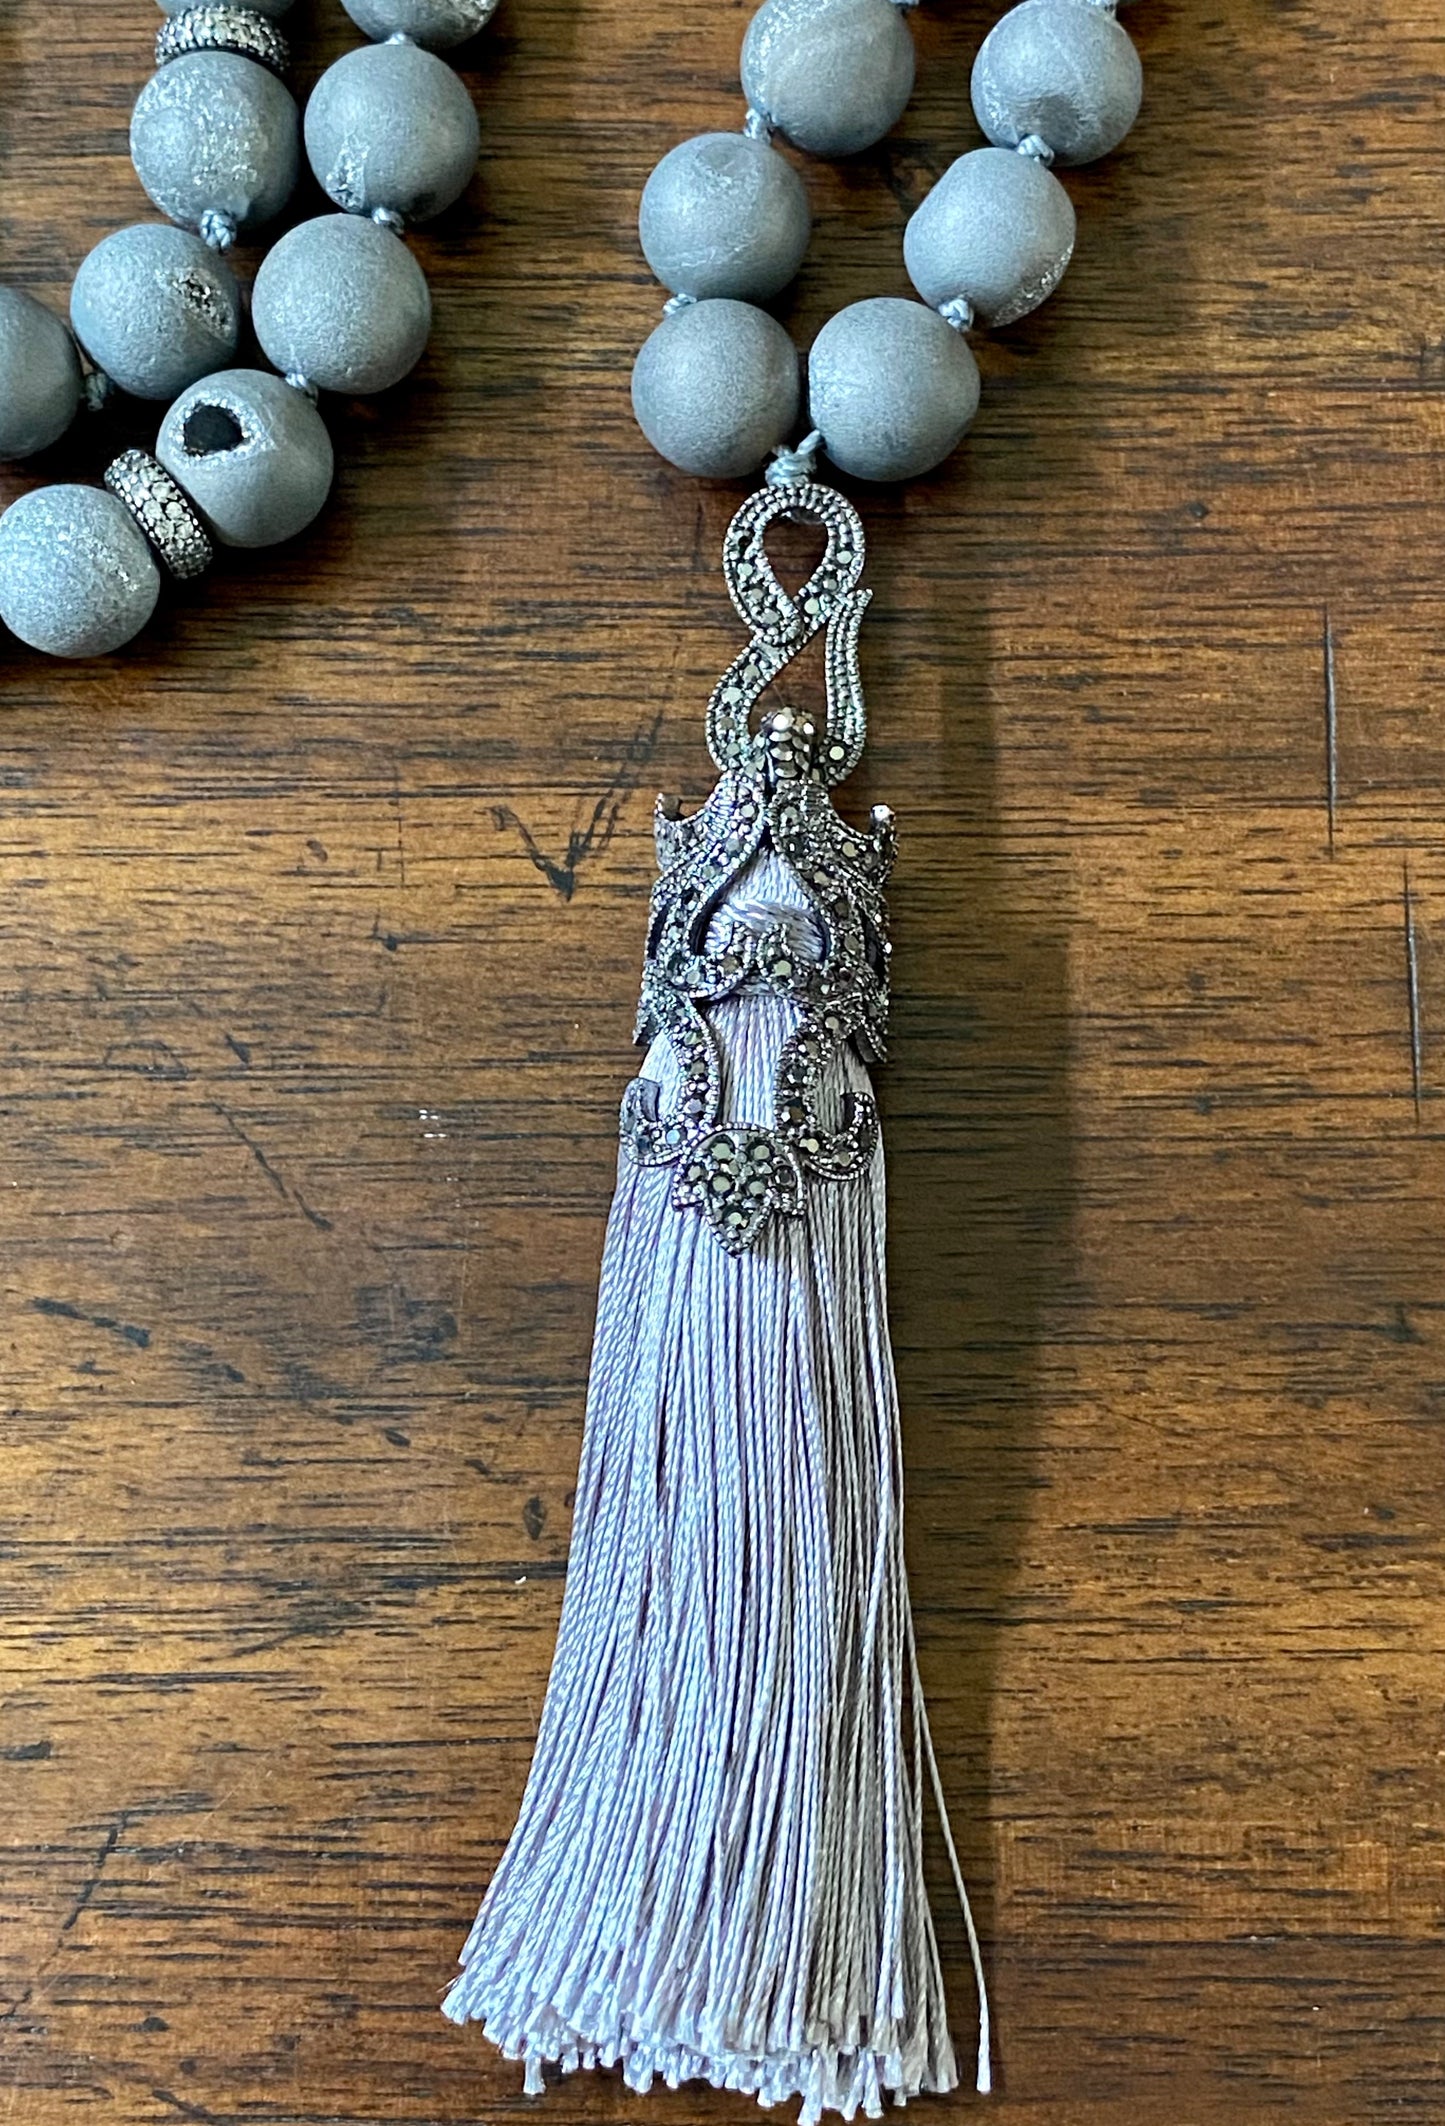 Long Natural Gemstone Tassel Necklace